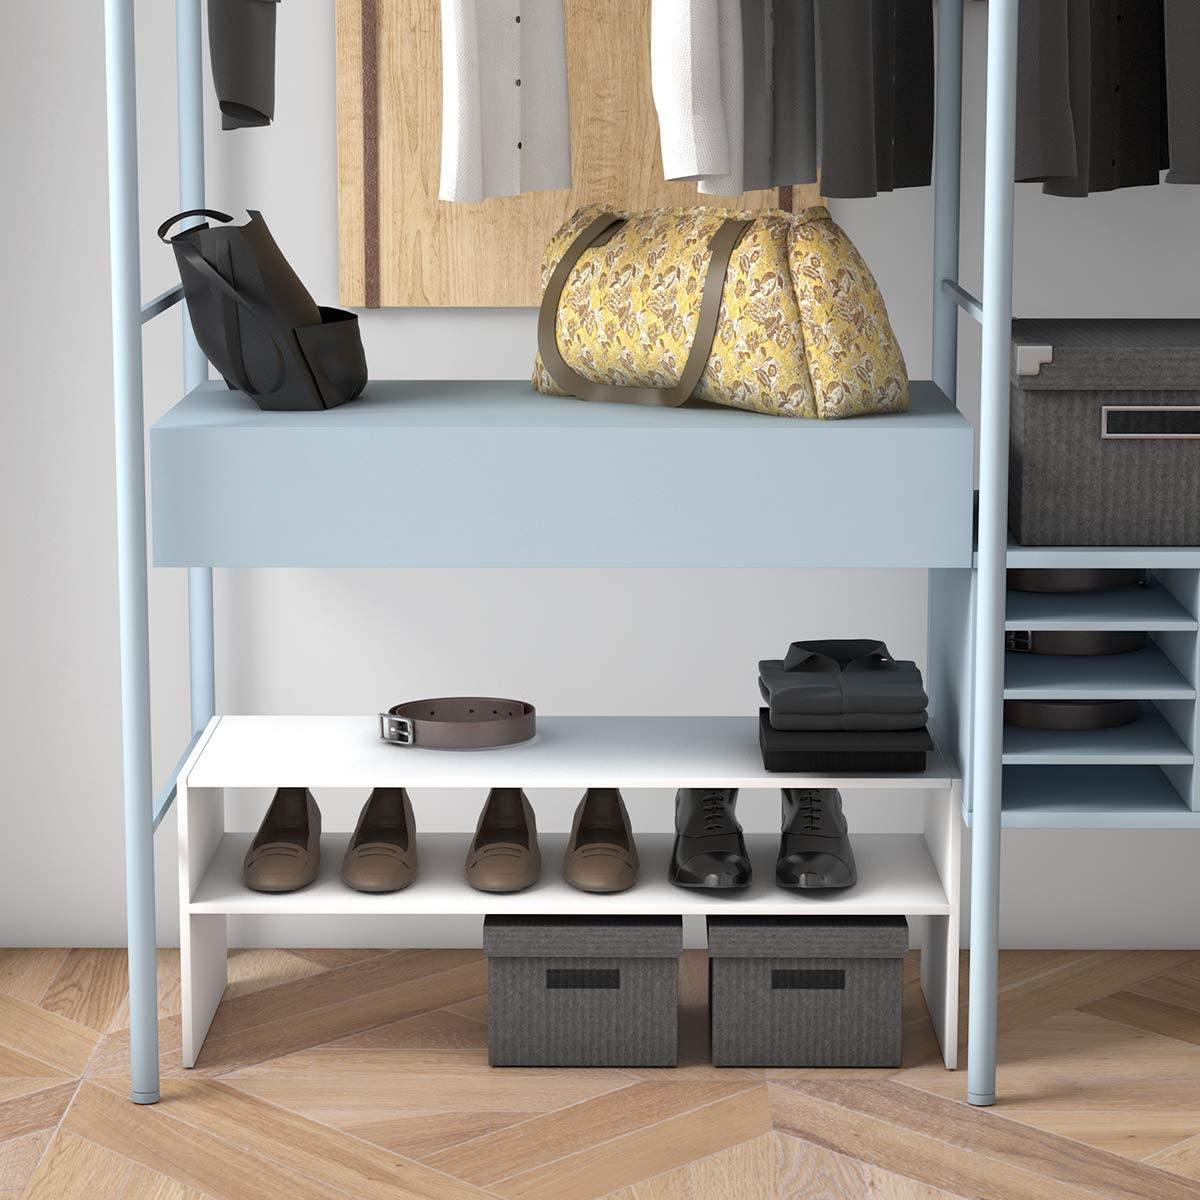 3-in-1 Shoe Rack, 5-Tier Shoe Organizer, Wood Storage Shelf for Shoes - Giantexus